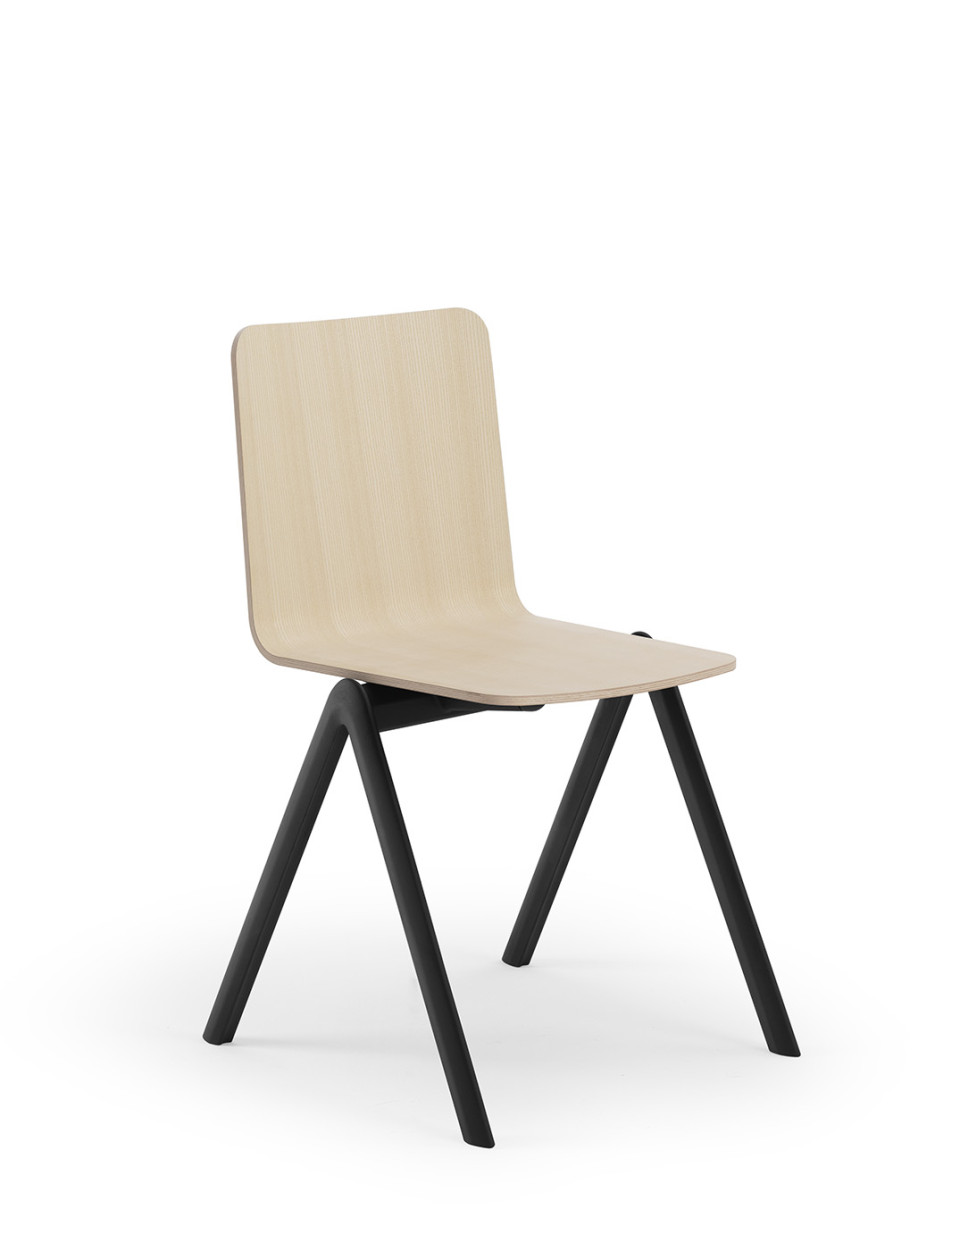 Sedia Stack con sedile in legno impiallacciato di frassino